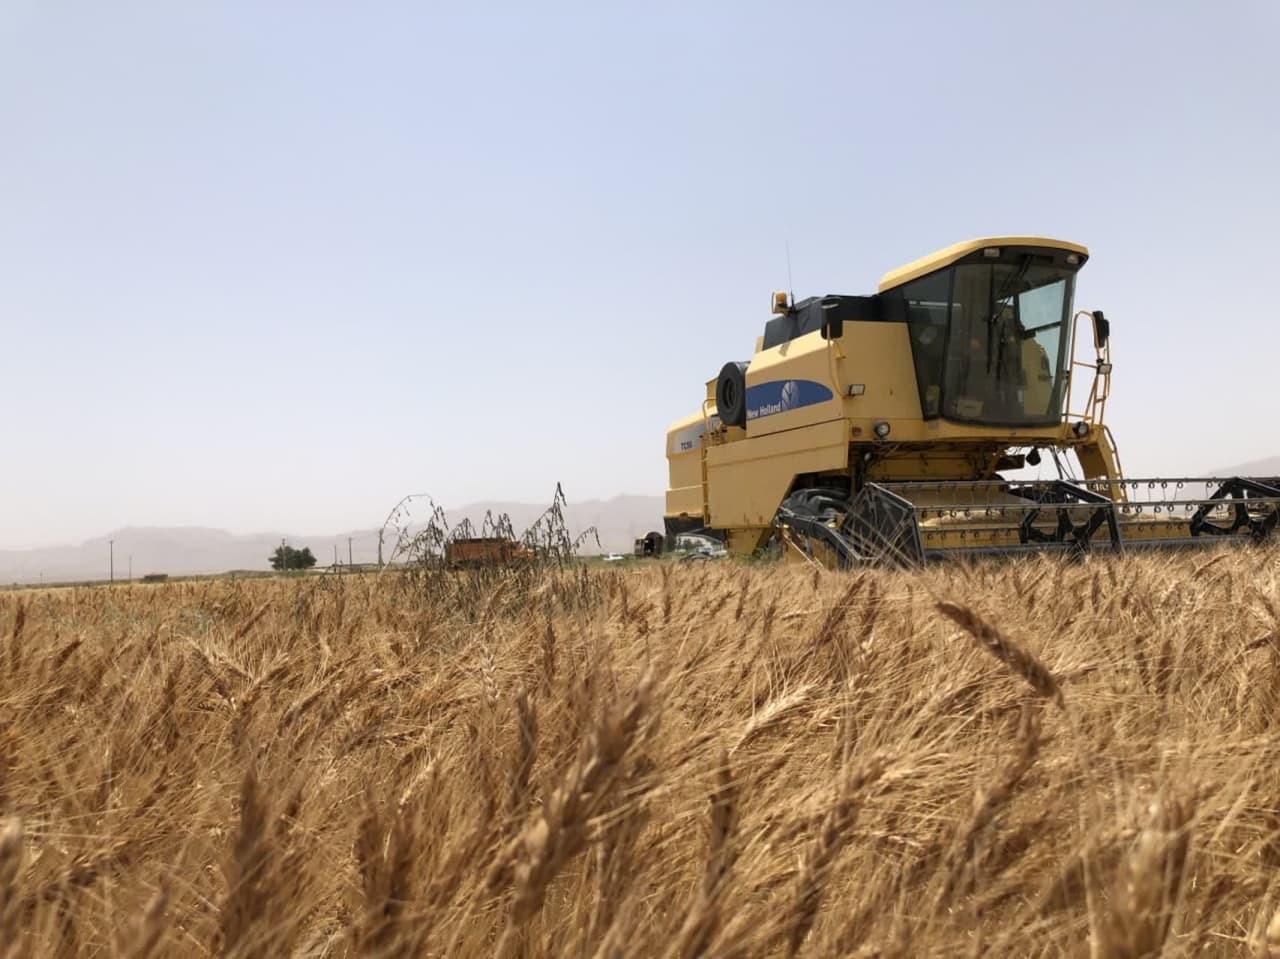 خریداری حدود ۵ هزار تن گندم از کشاورزان خراسان جنوبی